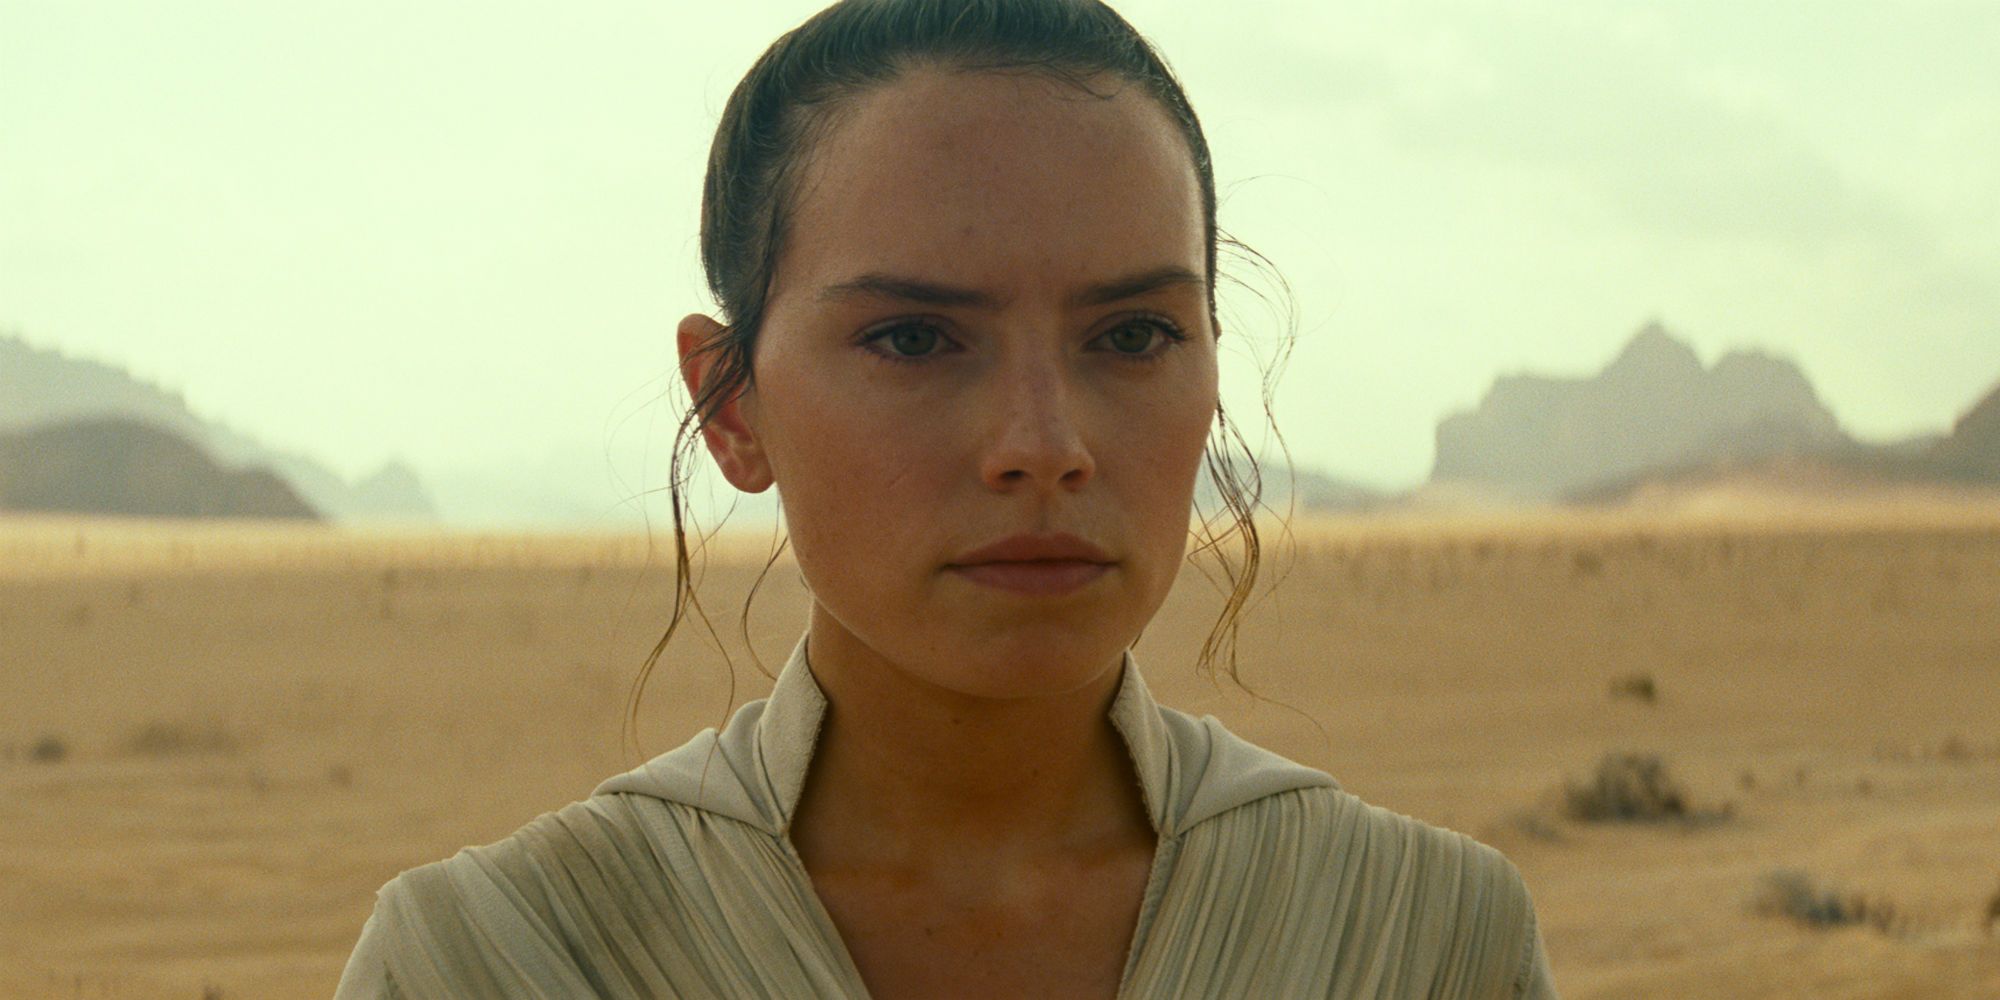 Star Wars The Rise of Skywalker Trailer - Rey on Desert Planet